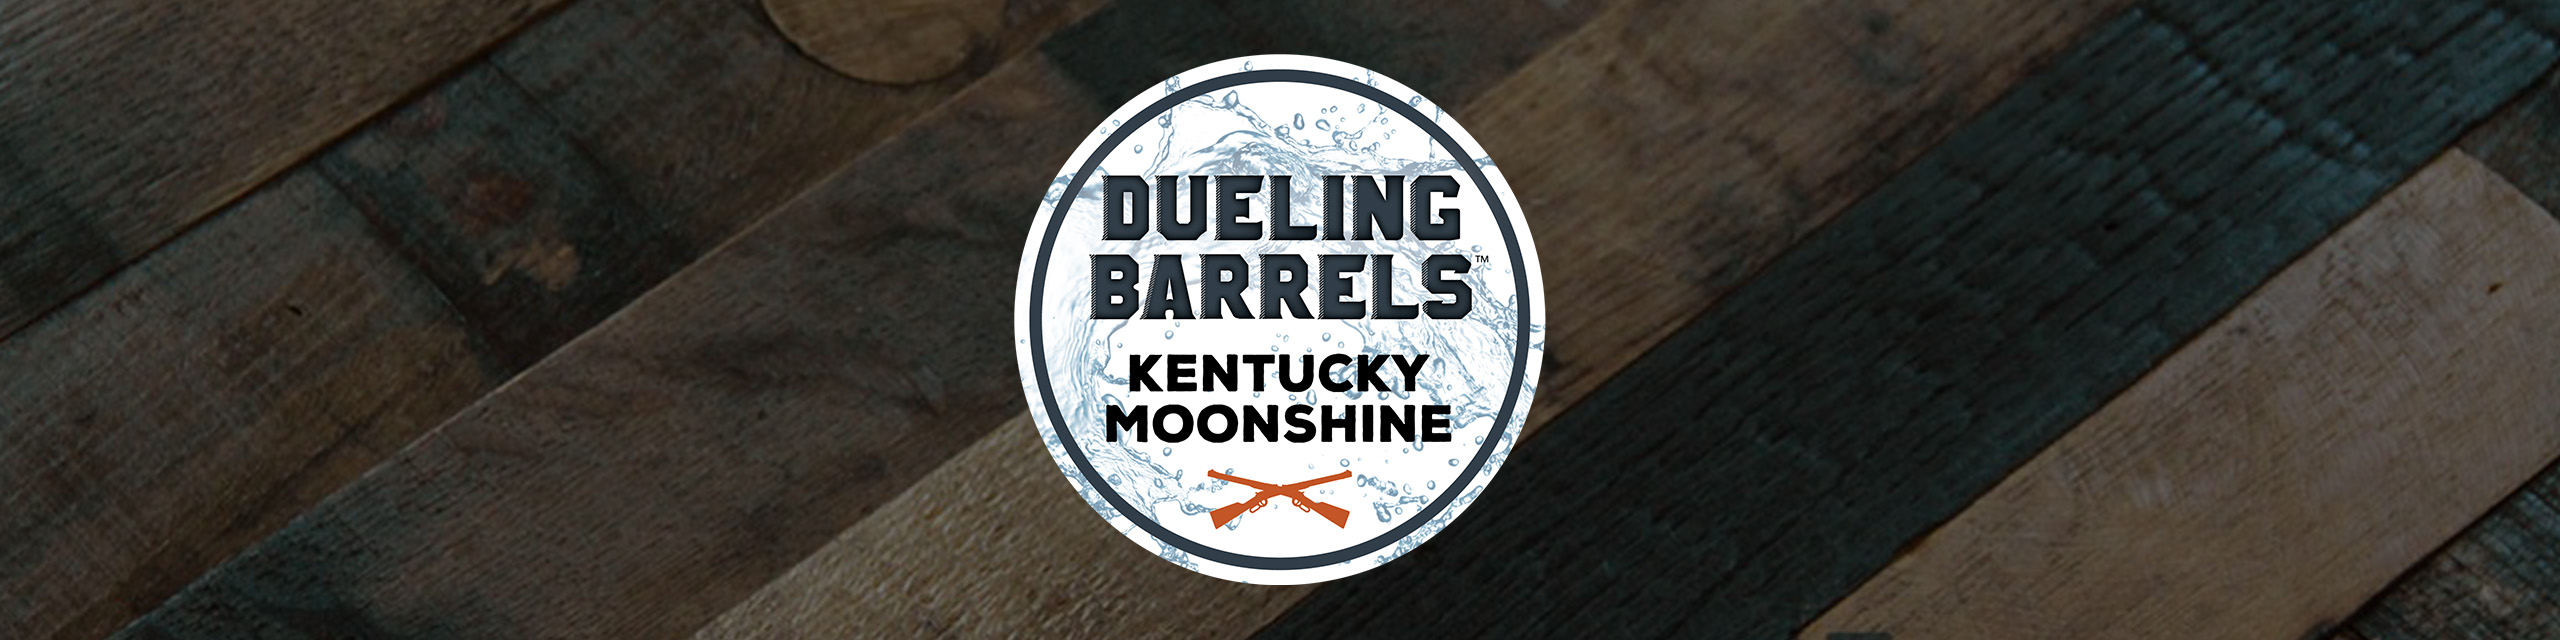 Dueling Barrels Moonshine